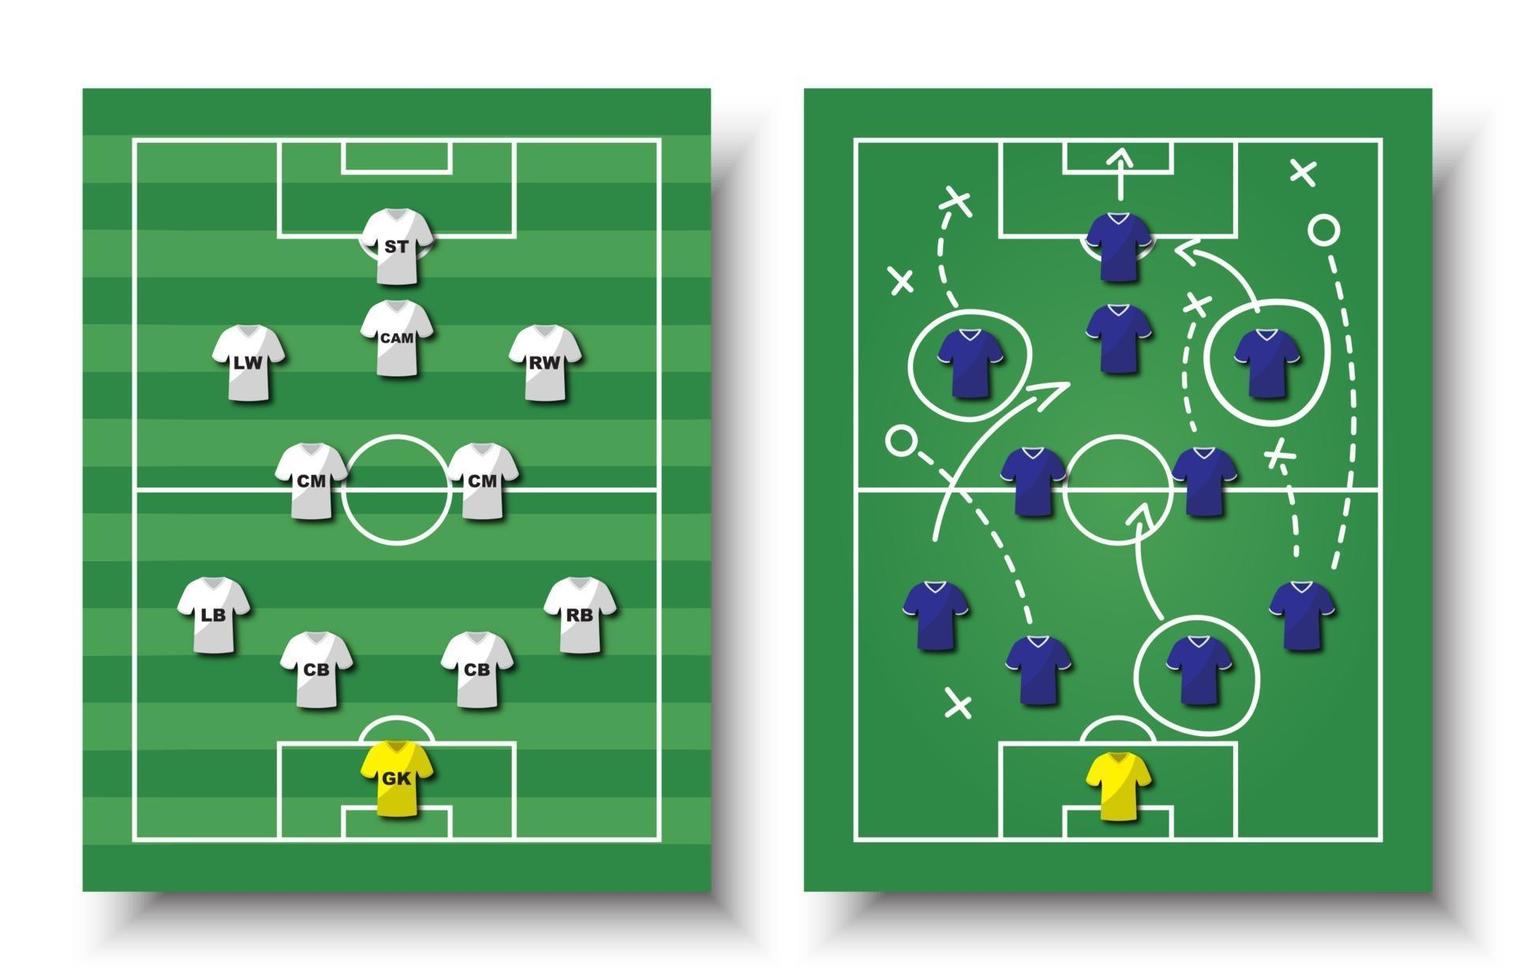 formation de coupe de football et ensemble tactique de terrain de football vue de dessus et joueurs avec maillot sur fond blanc isolé vecteur pour le concept de tournoi de championnat du monde international 2018